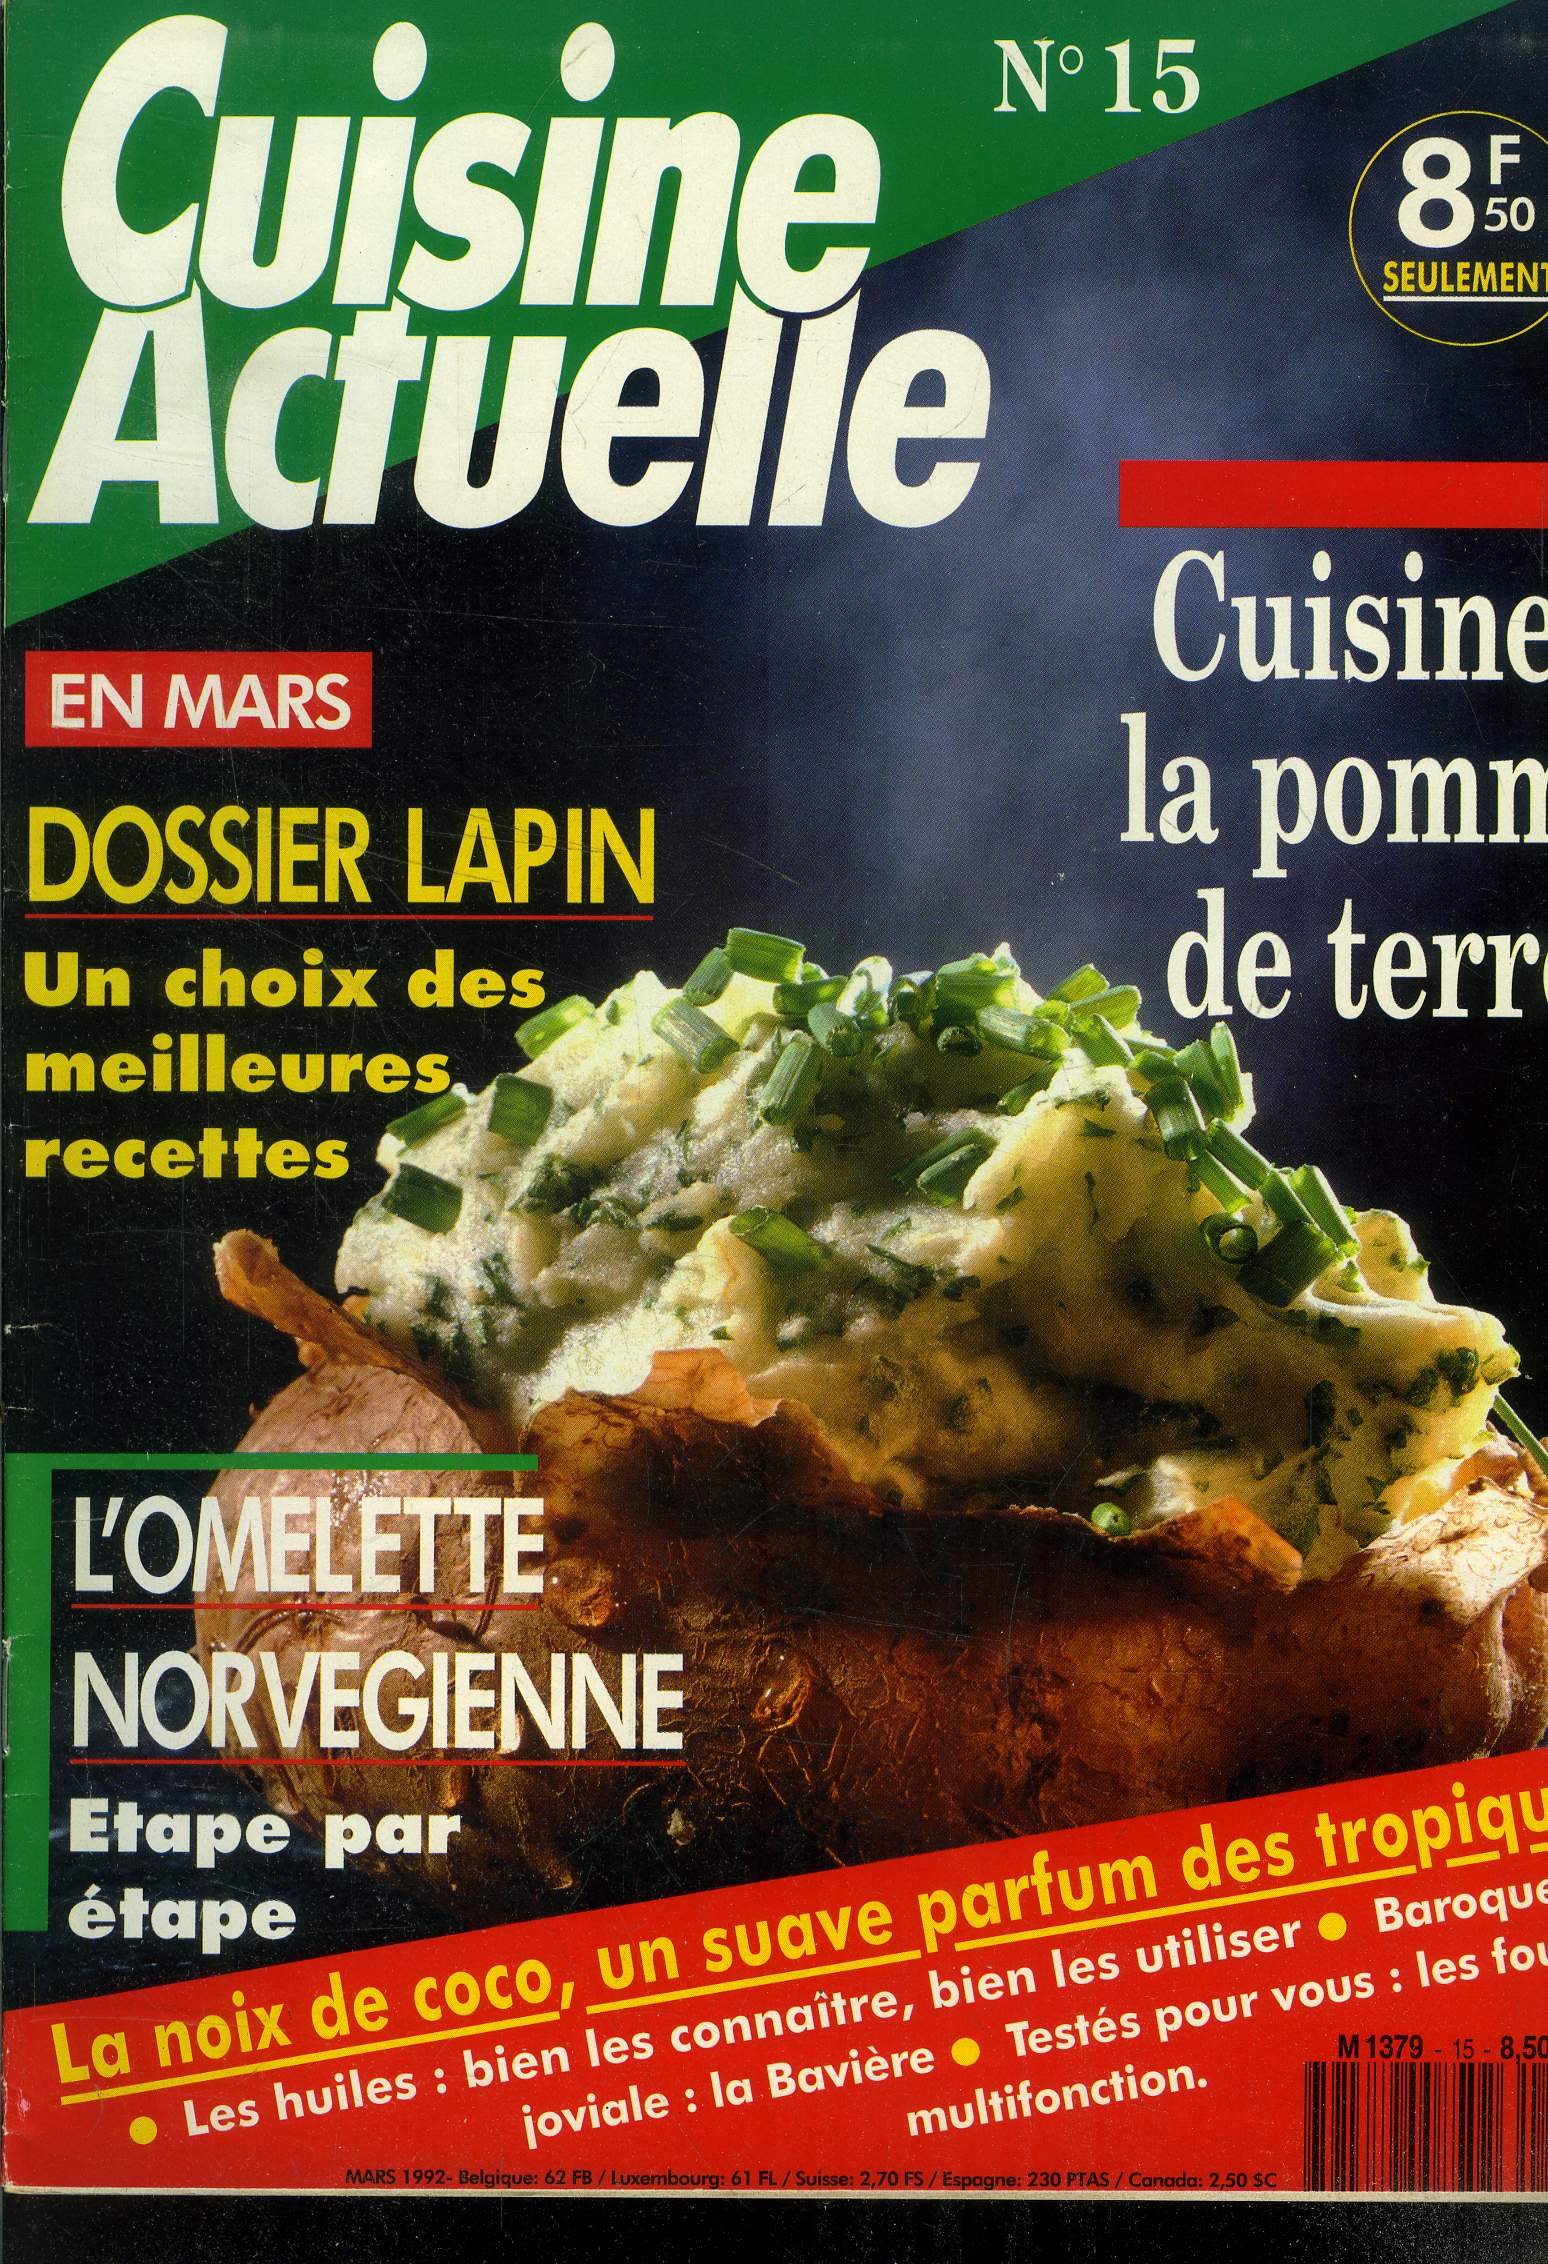 Cuisine actuelle n 15 - Mars 1992 : Le fenouil - La fondue suisse - Terrine d'avocats, aoli, bugnes lyonnaises - Le lapin - La cannelle - Les huiles - L'emmental - Les autocuiseurs,etc.